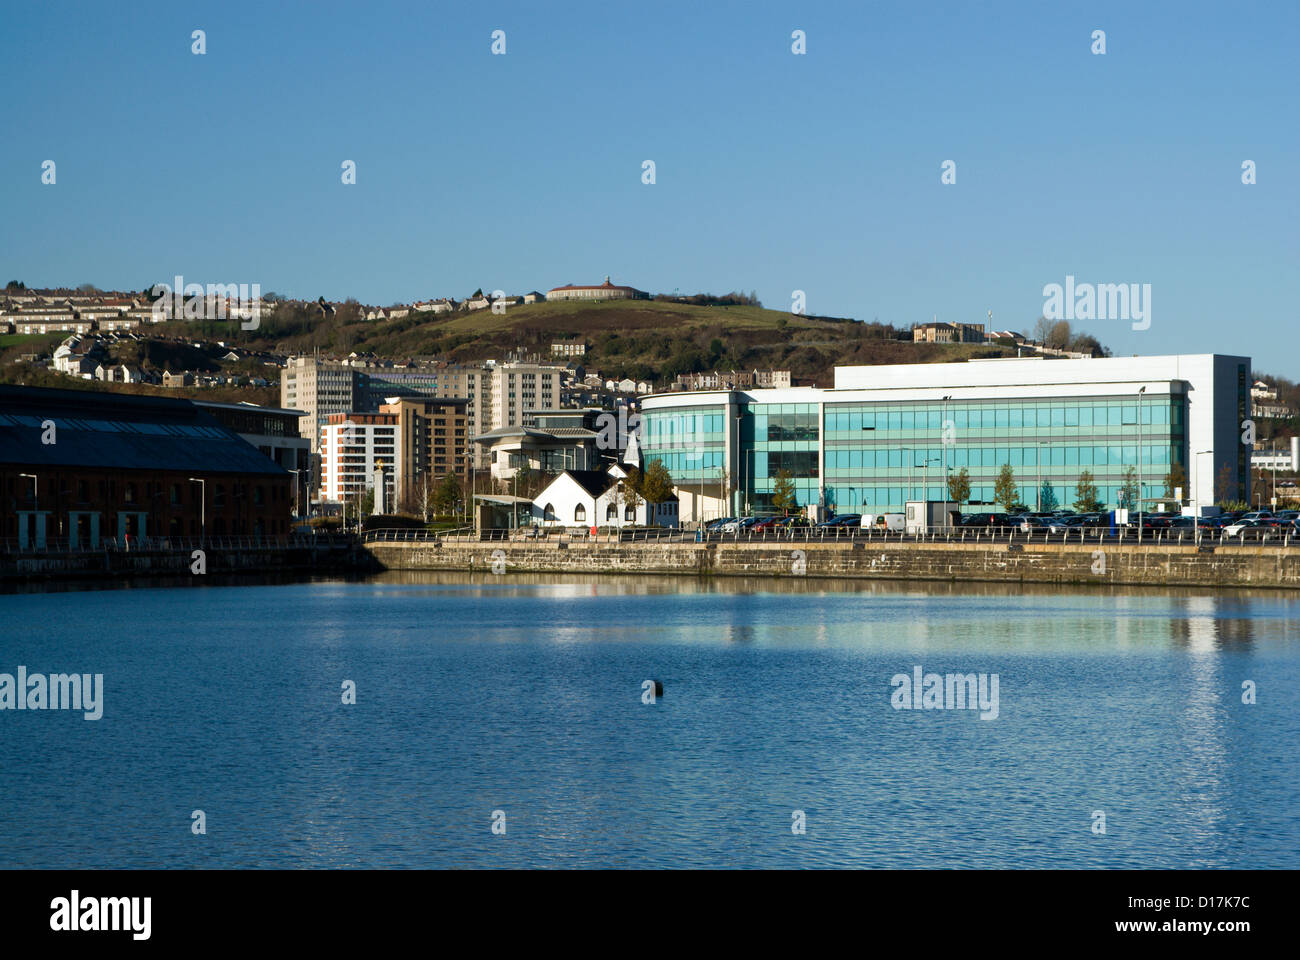 L'ancien dock SA1 development swansea Galles du Sud Royaume-Uni Banque D'Images